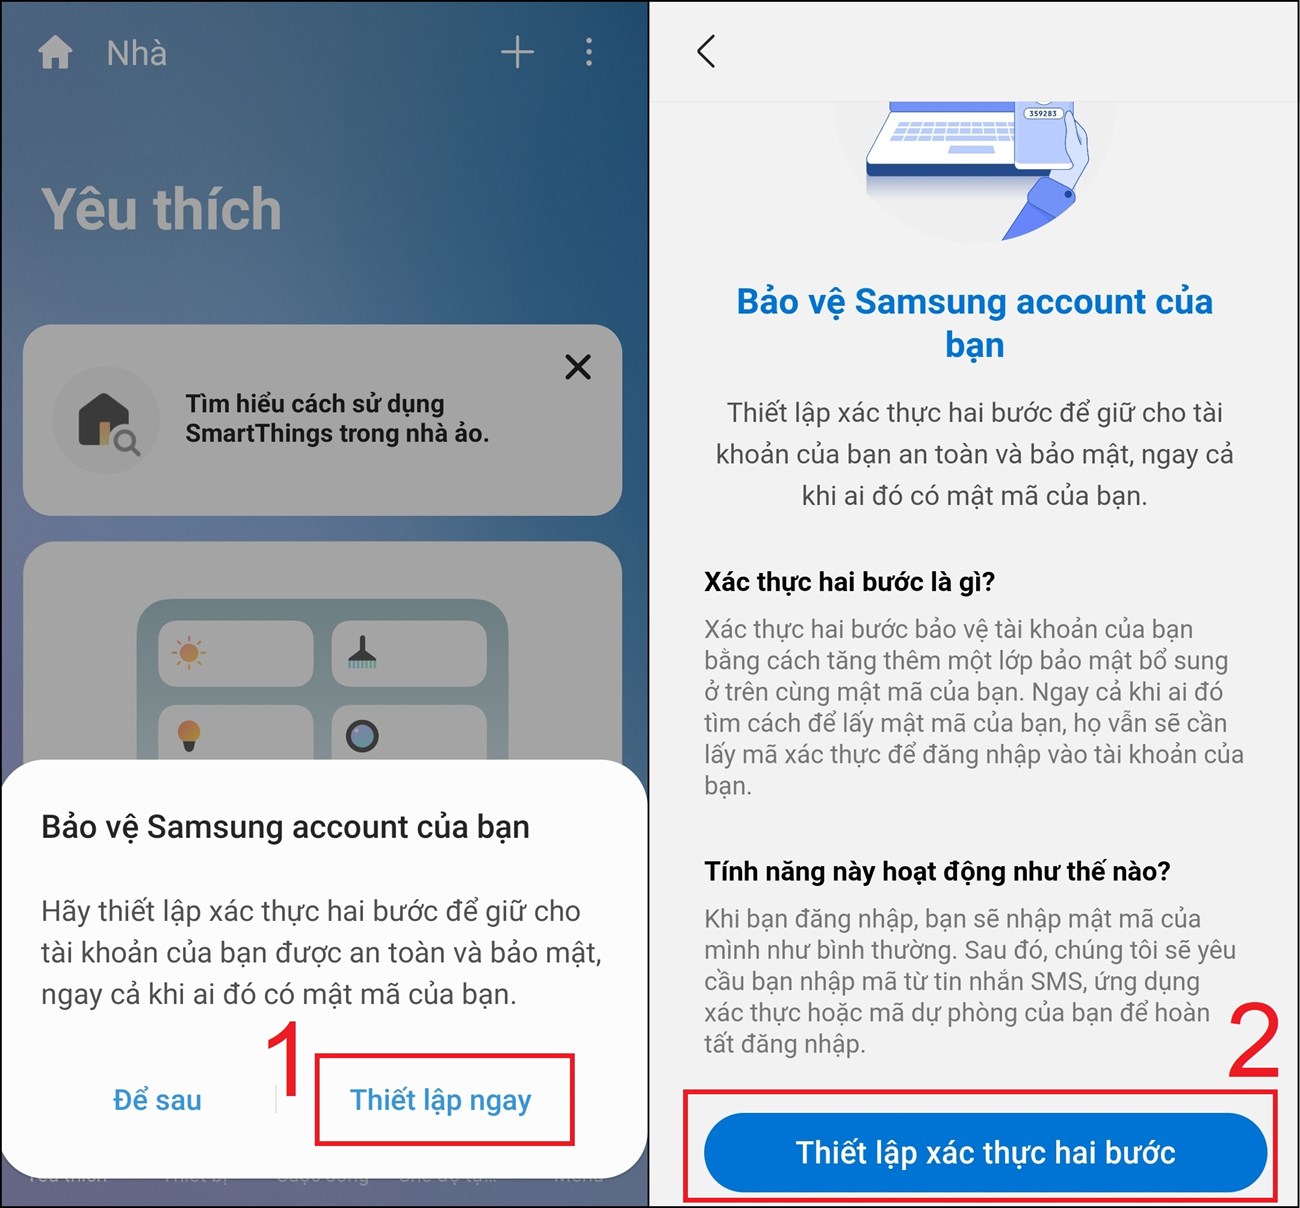 Sau đó, ứng dụng sẽ tiếp tục hiển thị thông báo Bảo vệ Samsung Account của bạn > Bạn chọn mục Thiết lập ngay > Chọn Thiết lập xác thực hai bước.